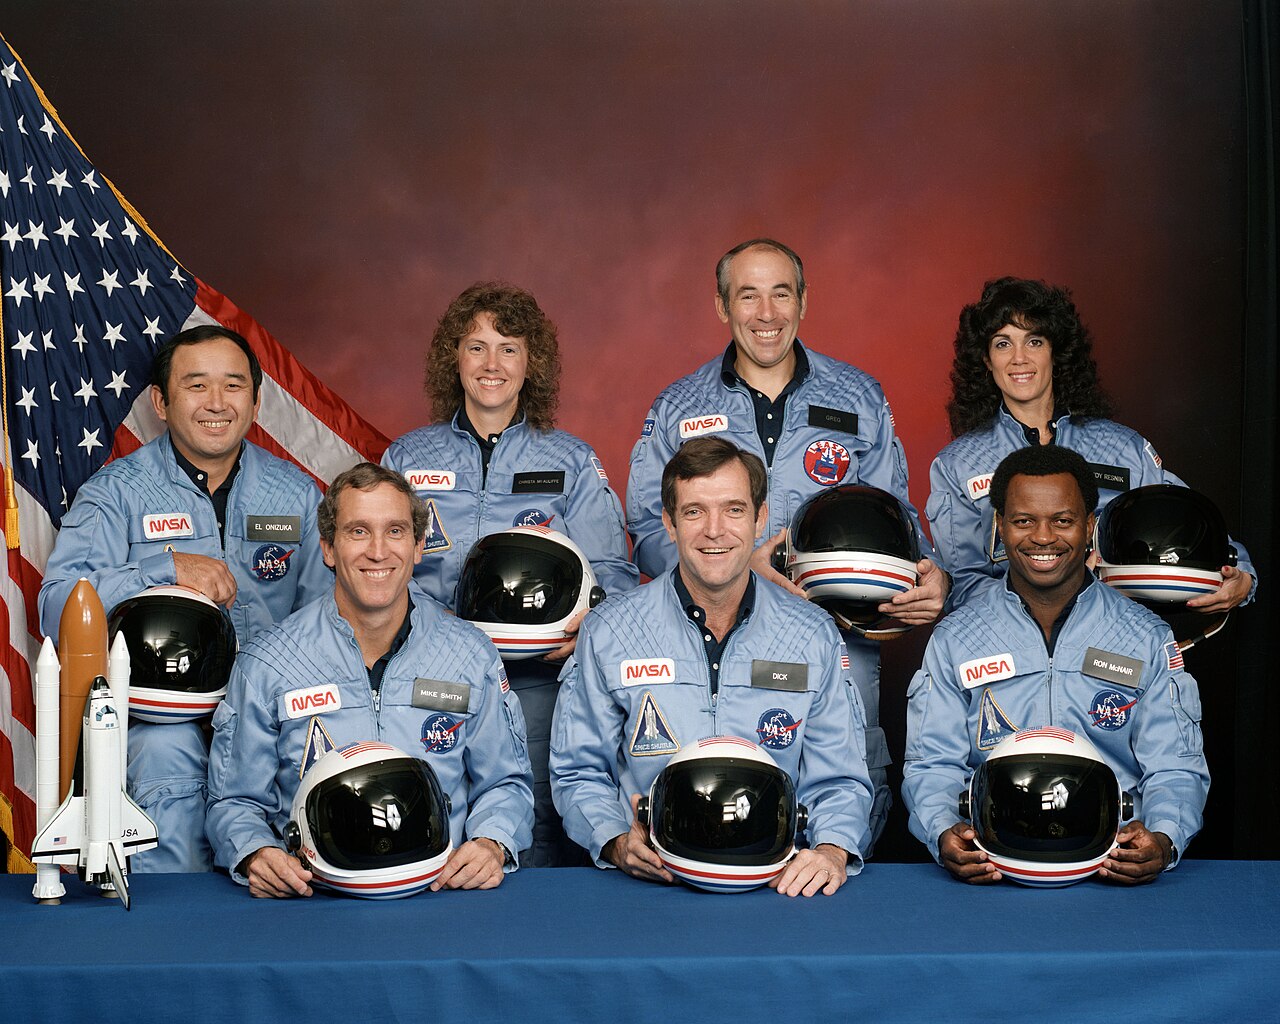 27 anni fa, l'esplosione del Challenger 1280px-Challenger_flight_51-l_crew